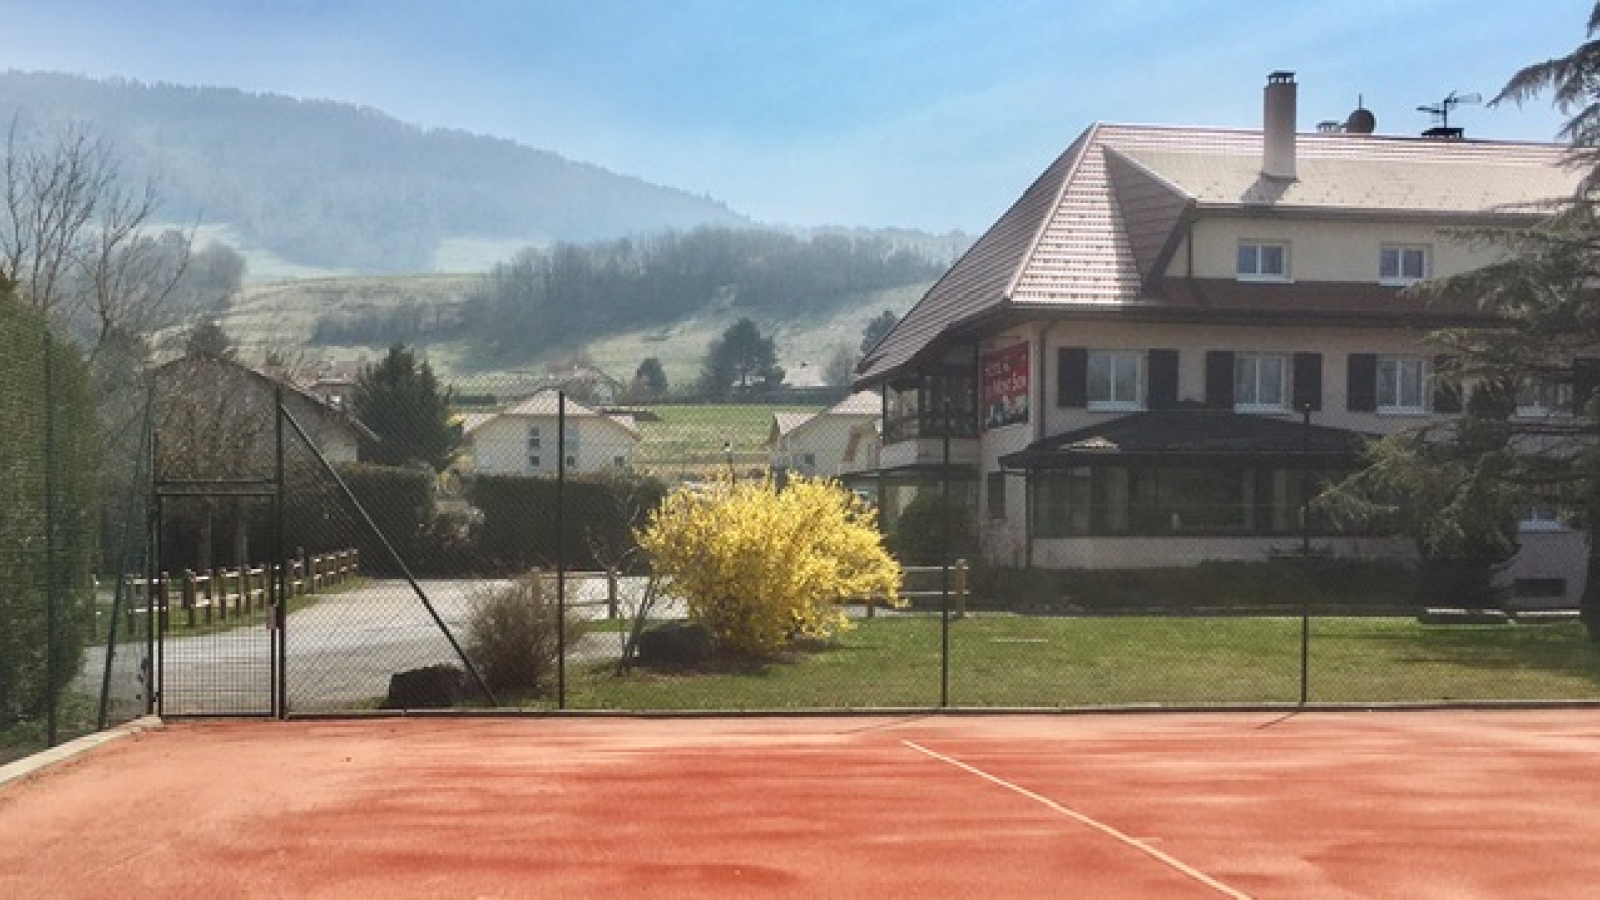 Hôtel et cours de tennis